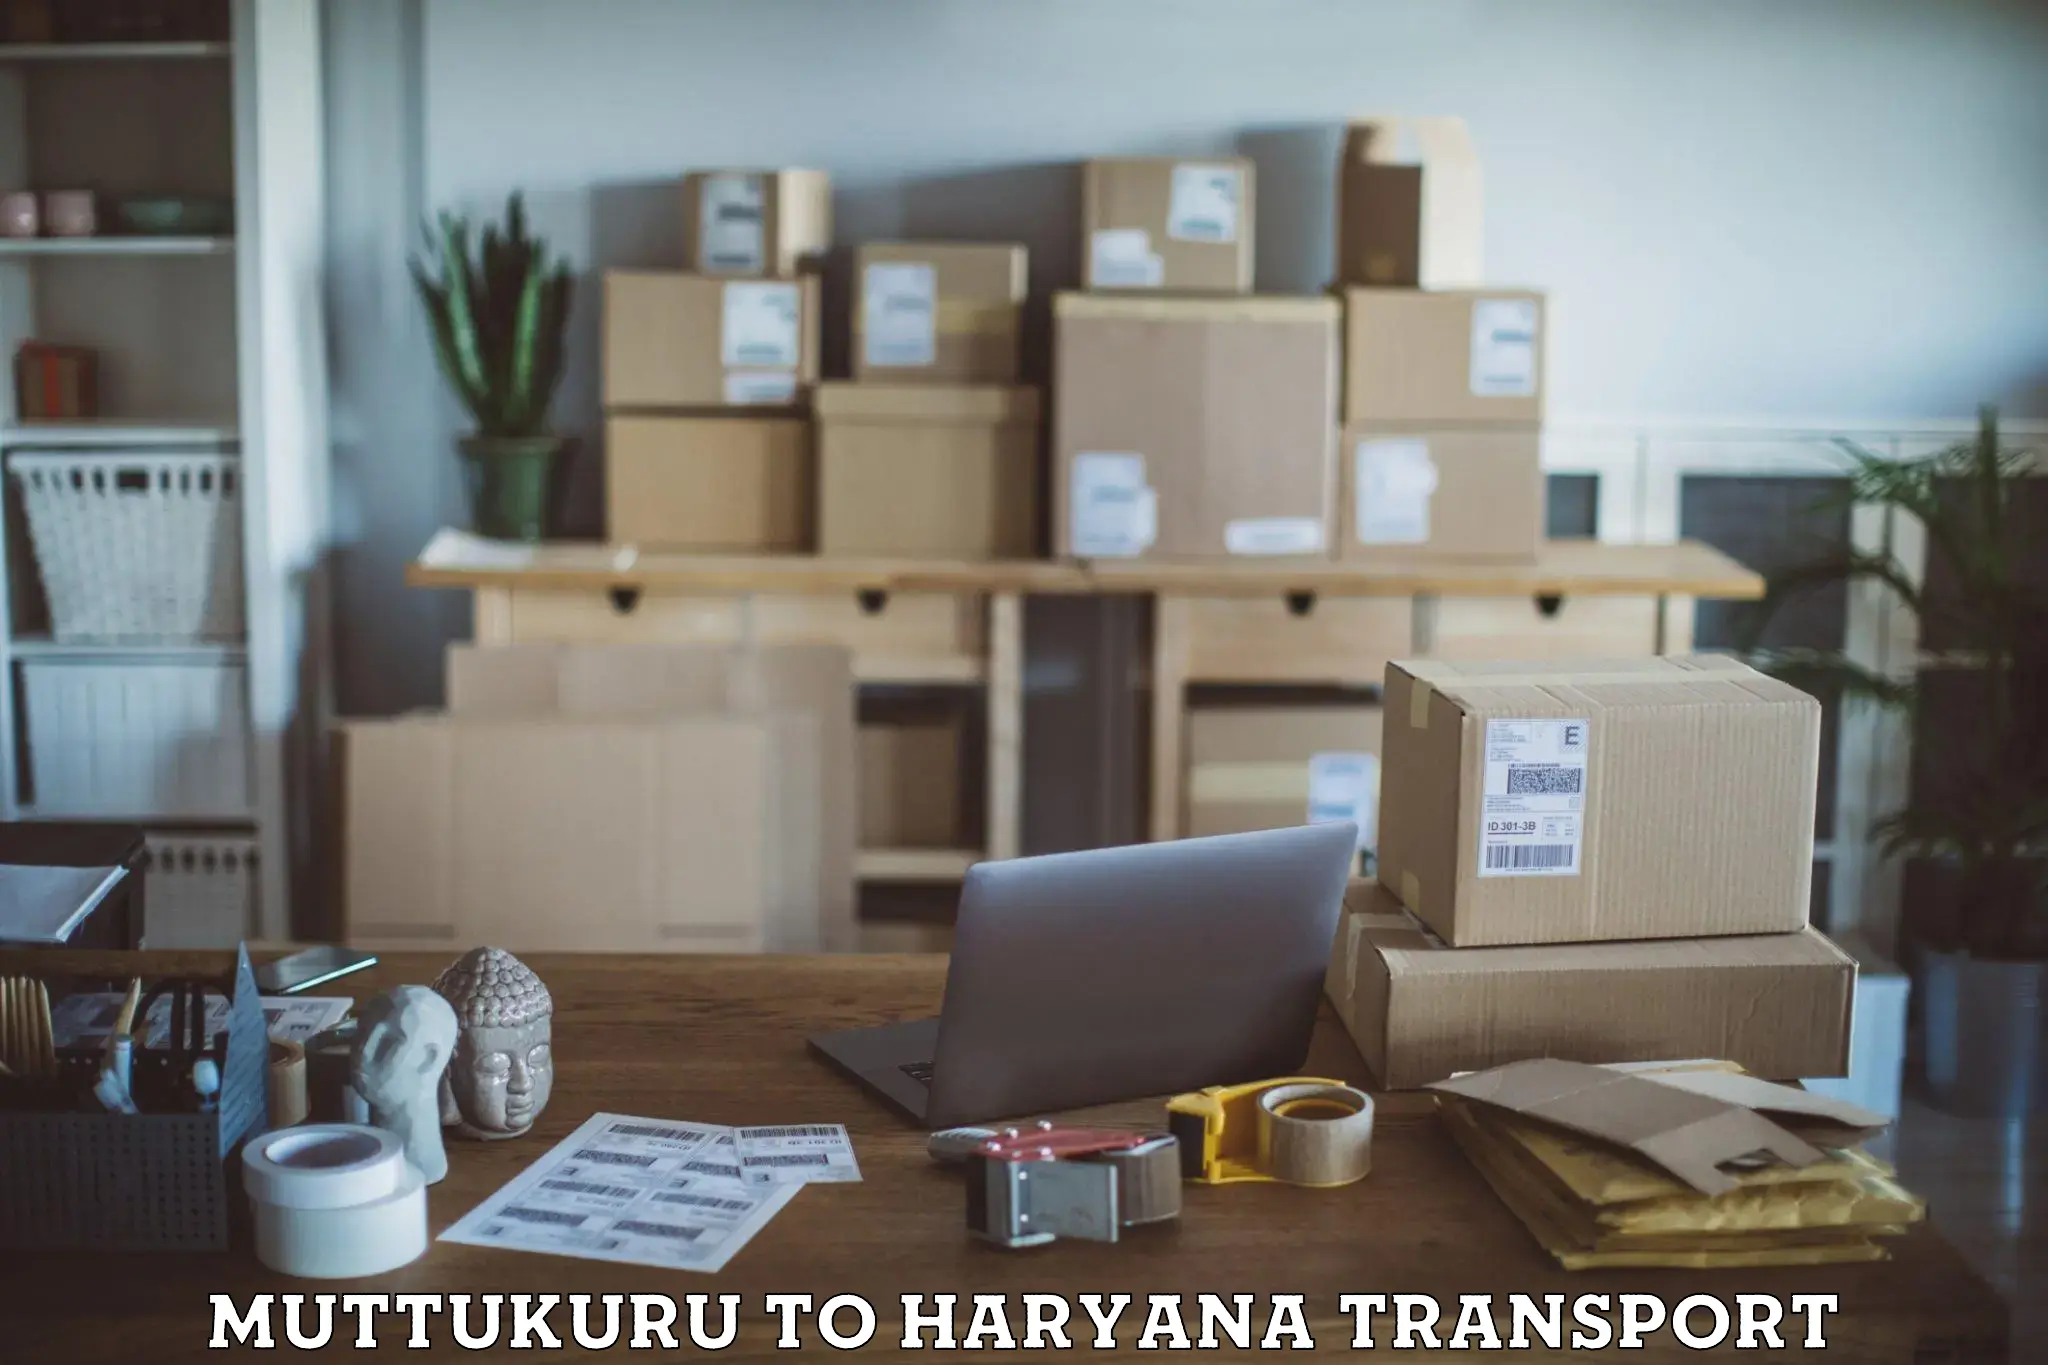 Lorry transport service Muttukuru to Haryana